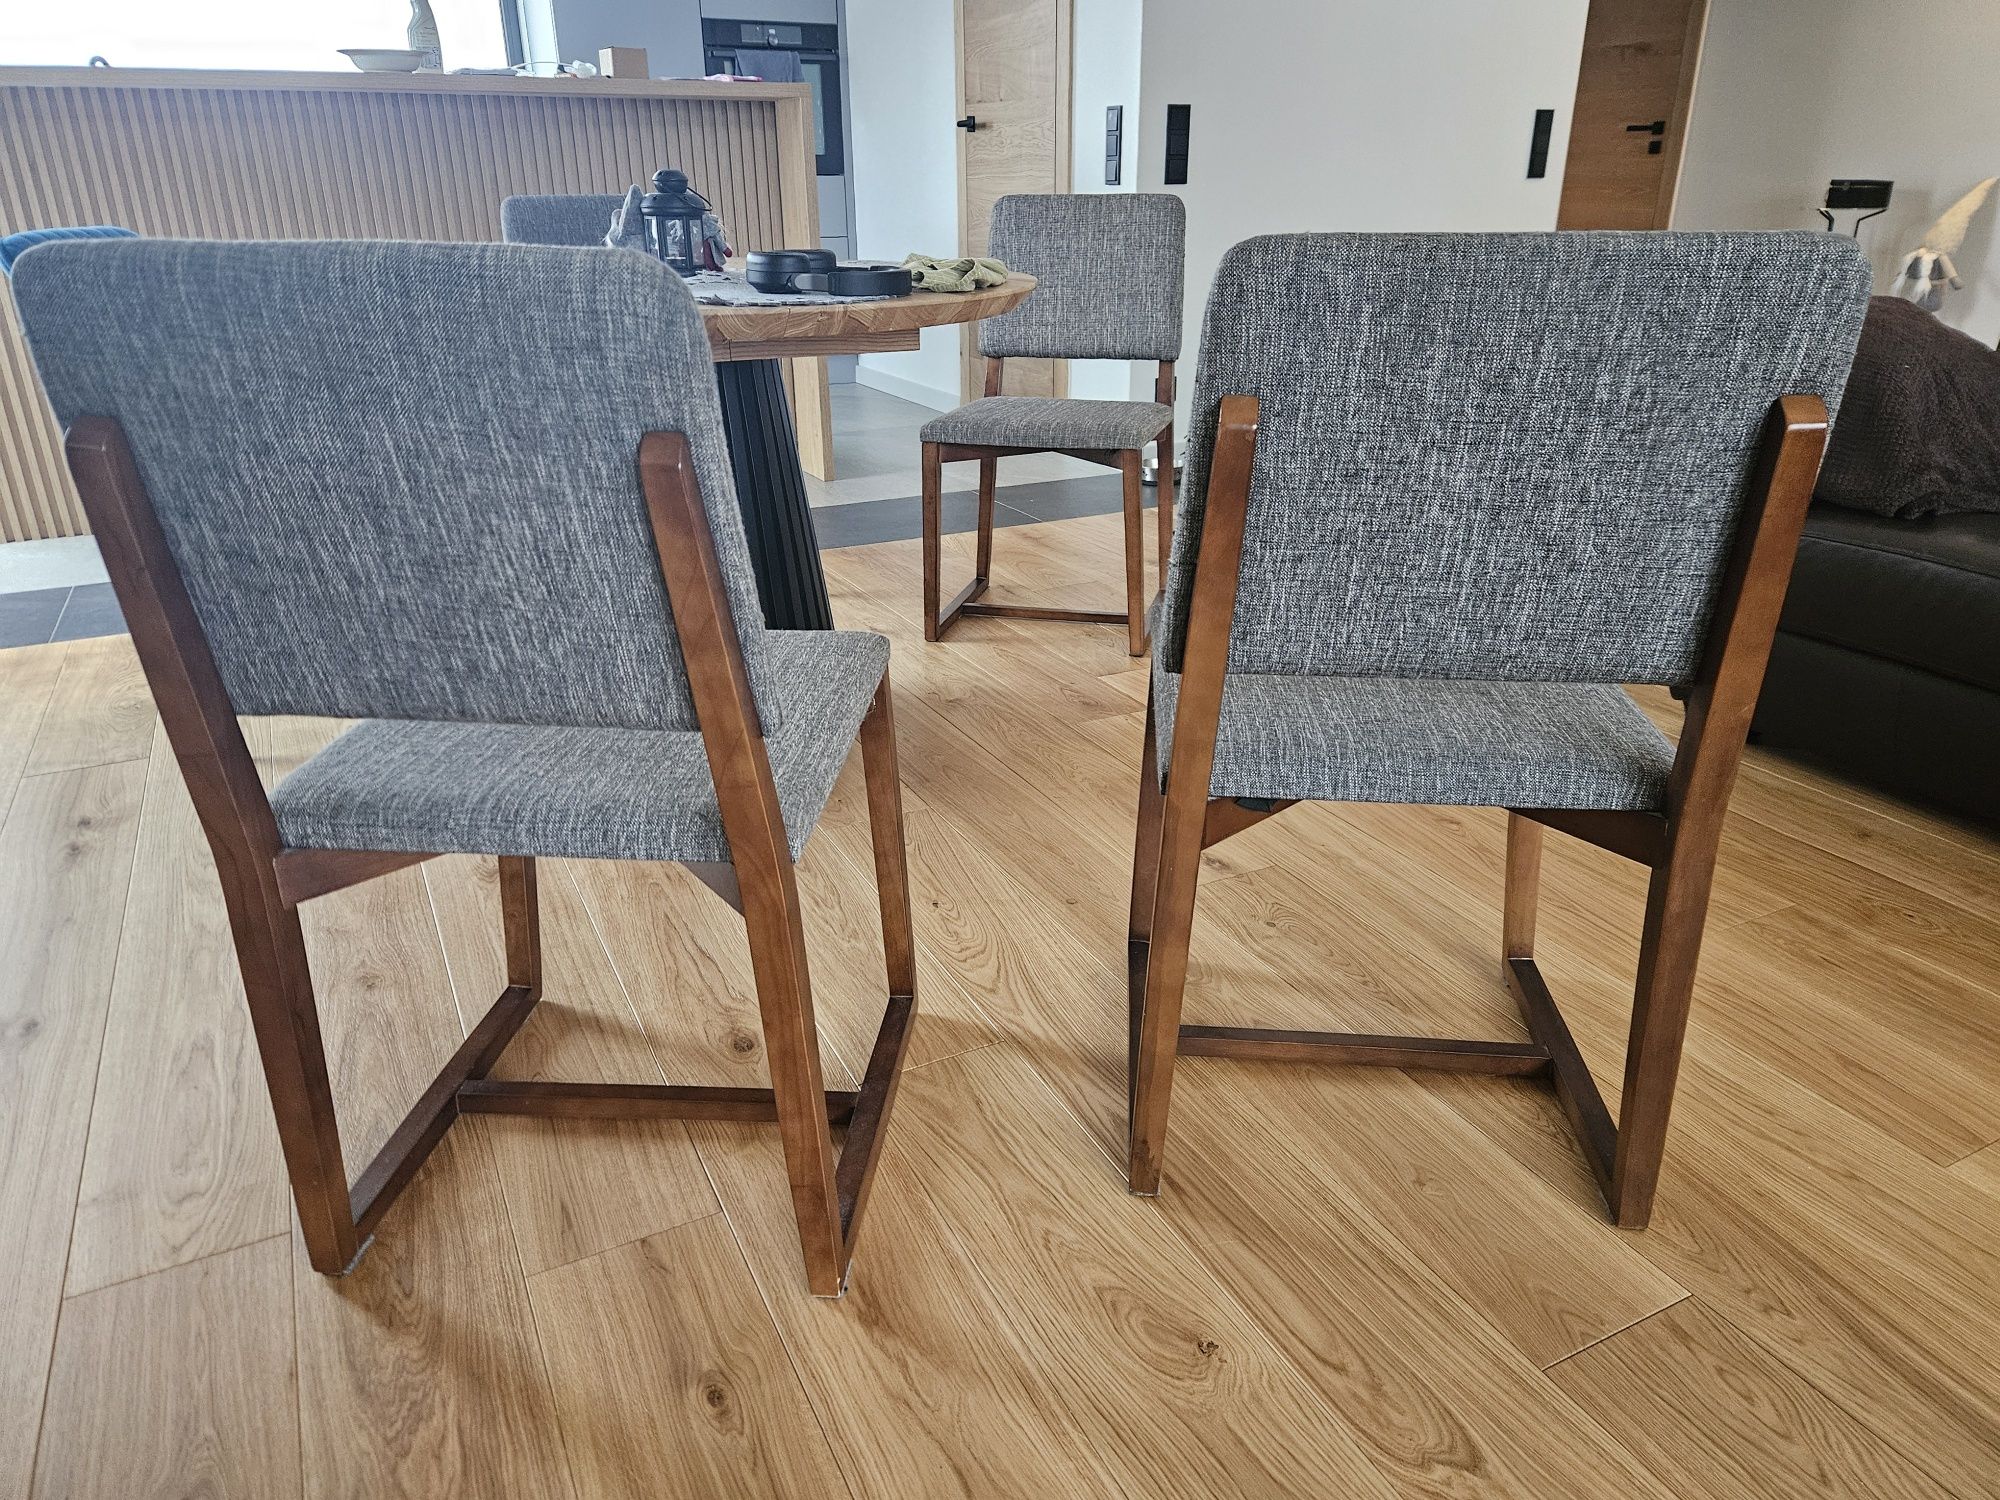 Drewniane Krzesło marki VOX seria INBOX - łącznie 6 krzeseł